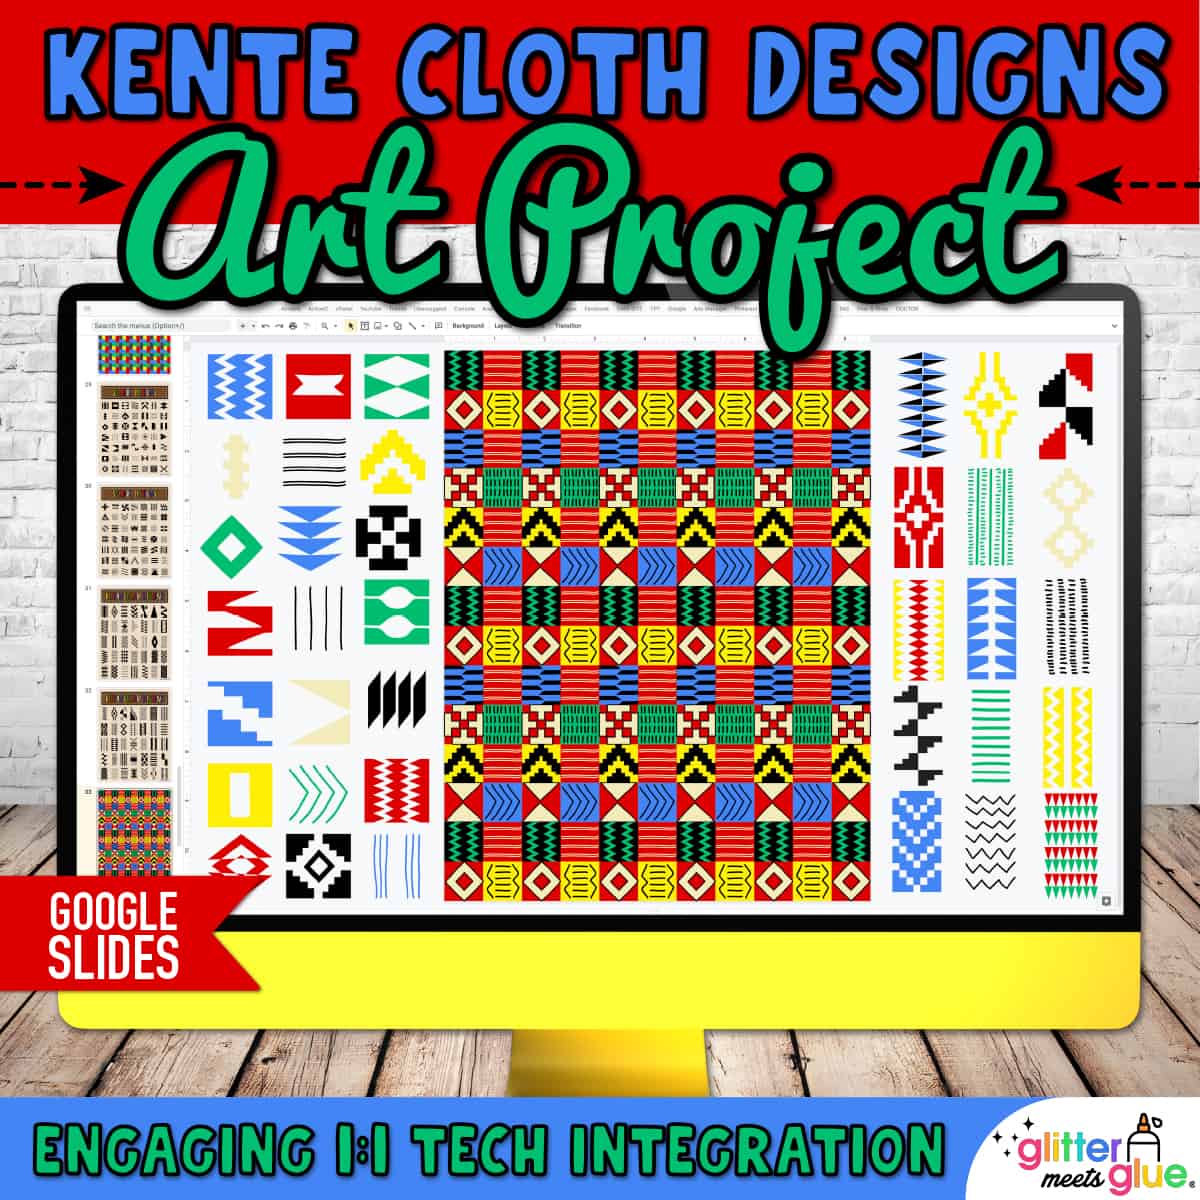 Kente cloth design